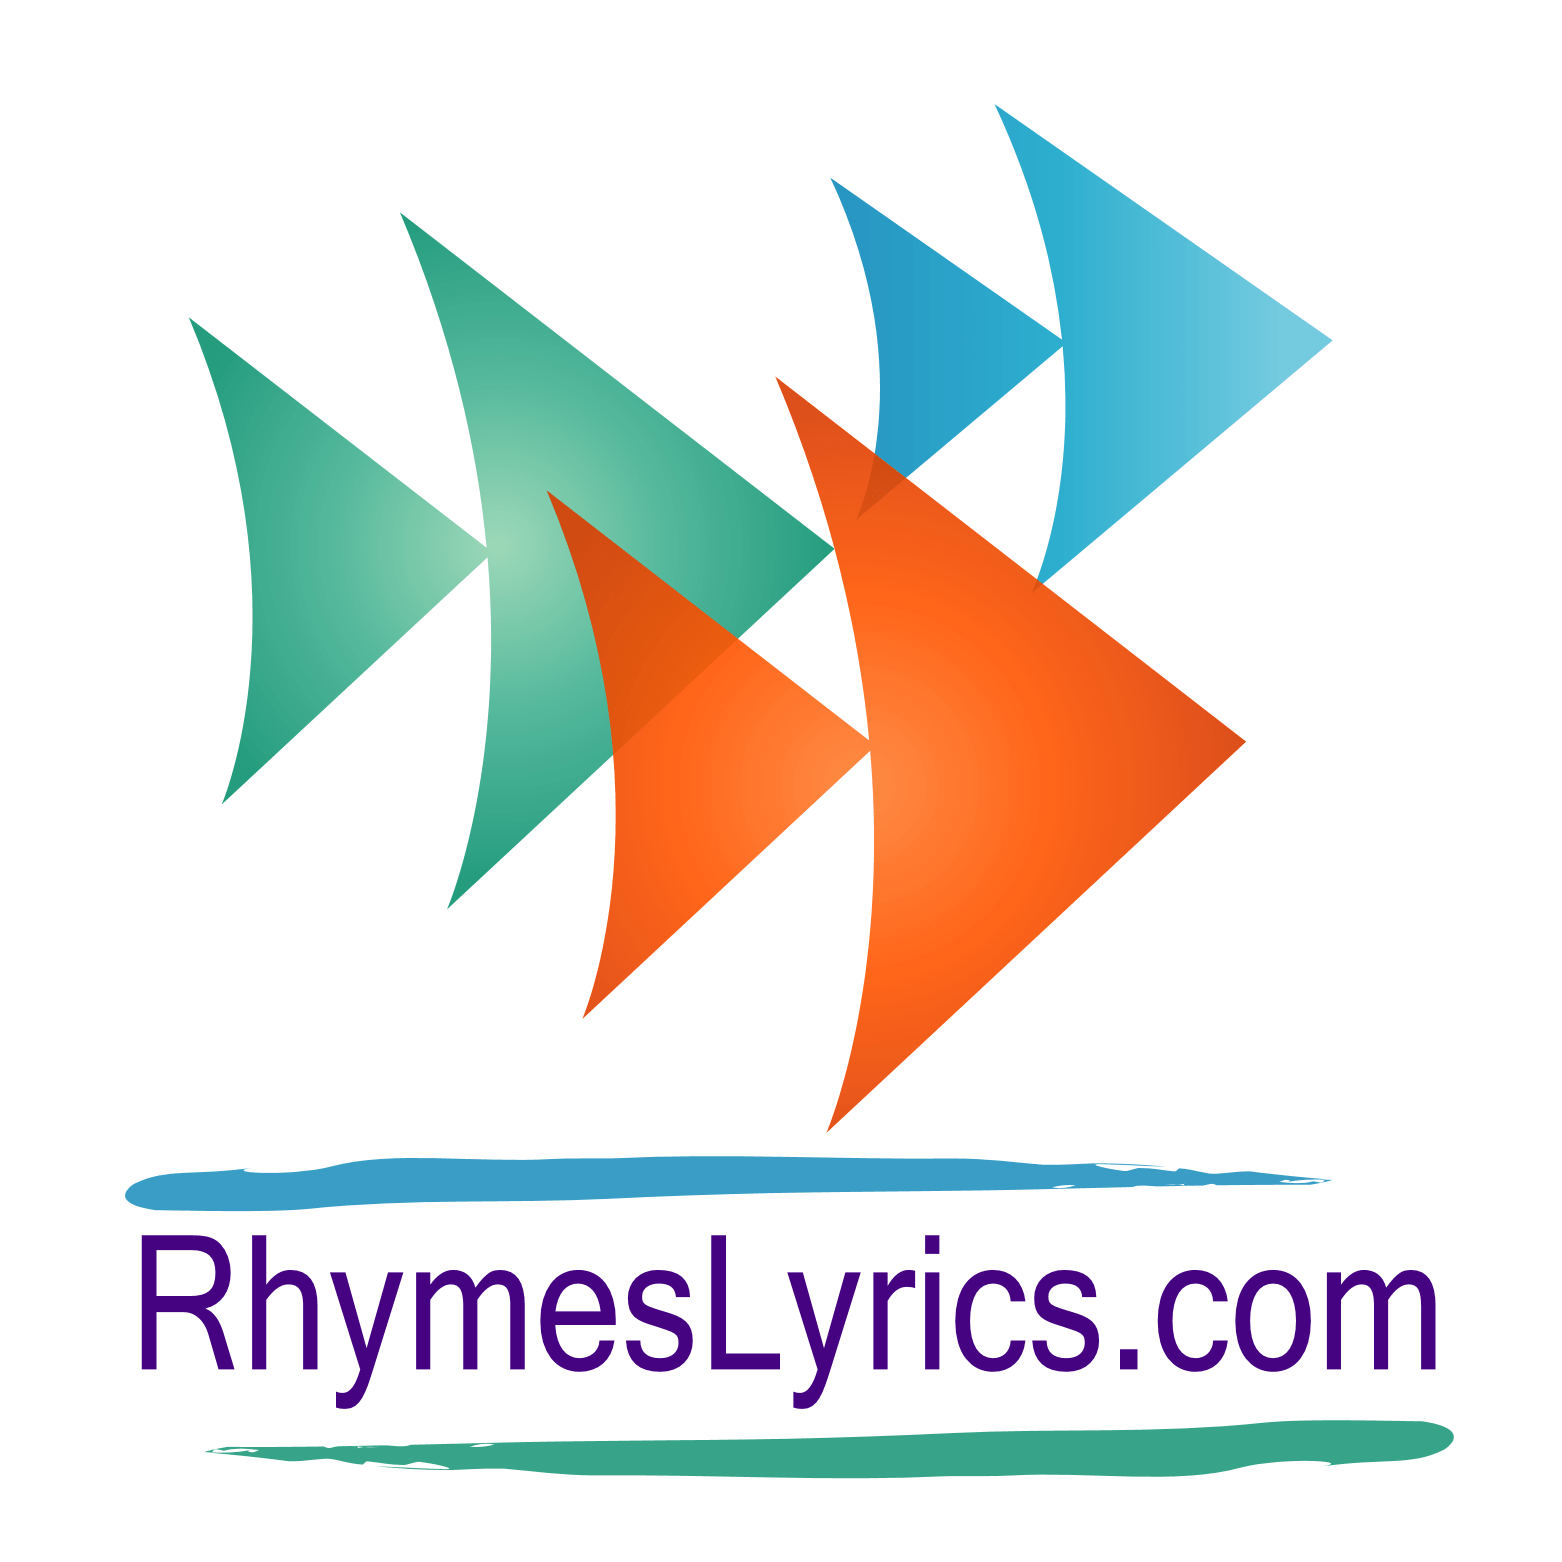 RhymesLyrics.com   20 Best source of lyrics for nursery kids